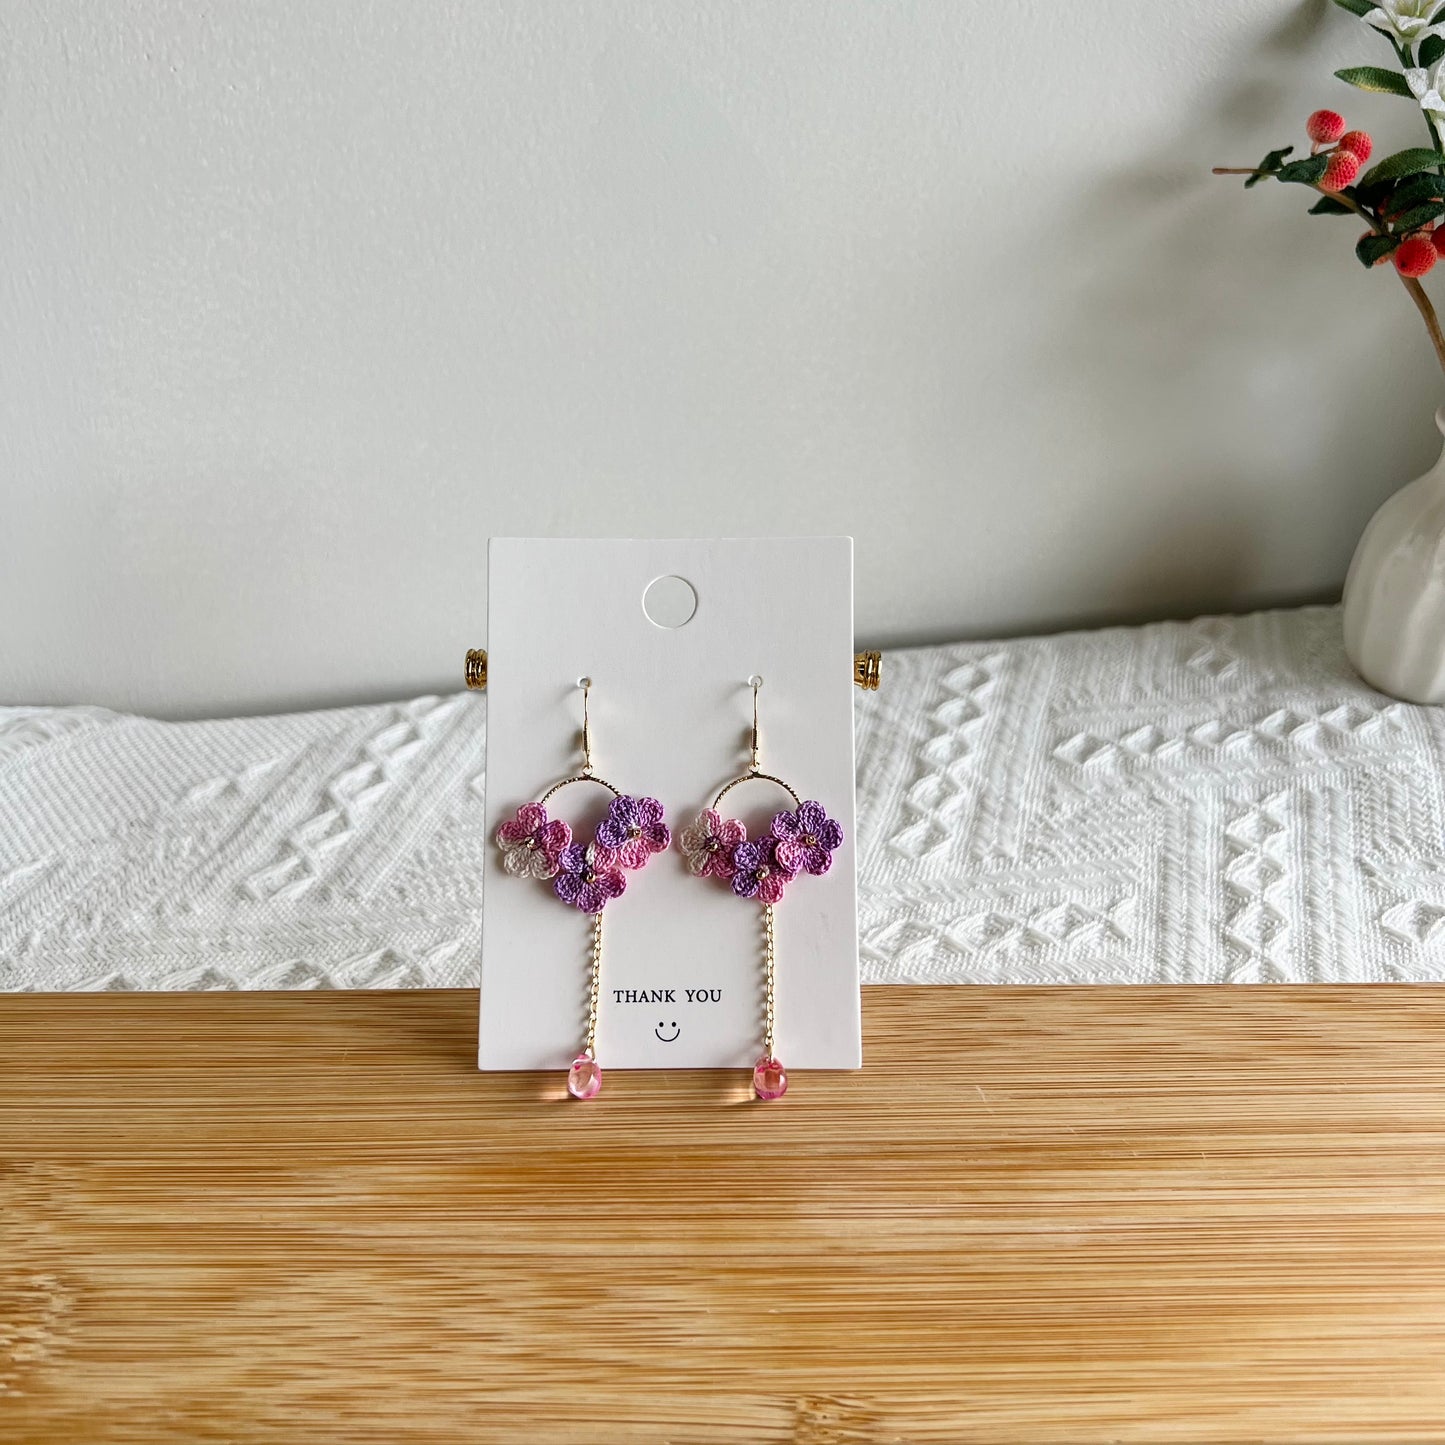 Mini Crochet Earrings | Flower Earrings | Handmade Drop Earrings | Unique Gift for Her